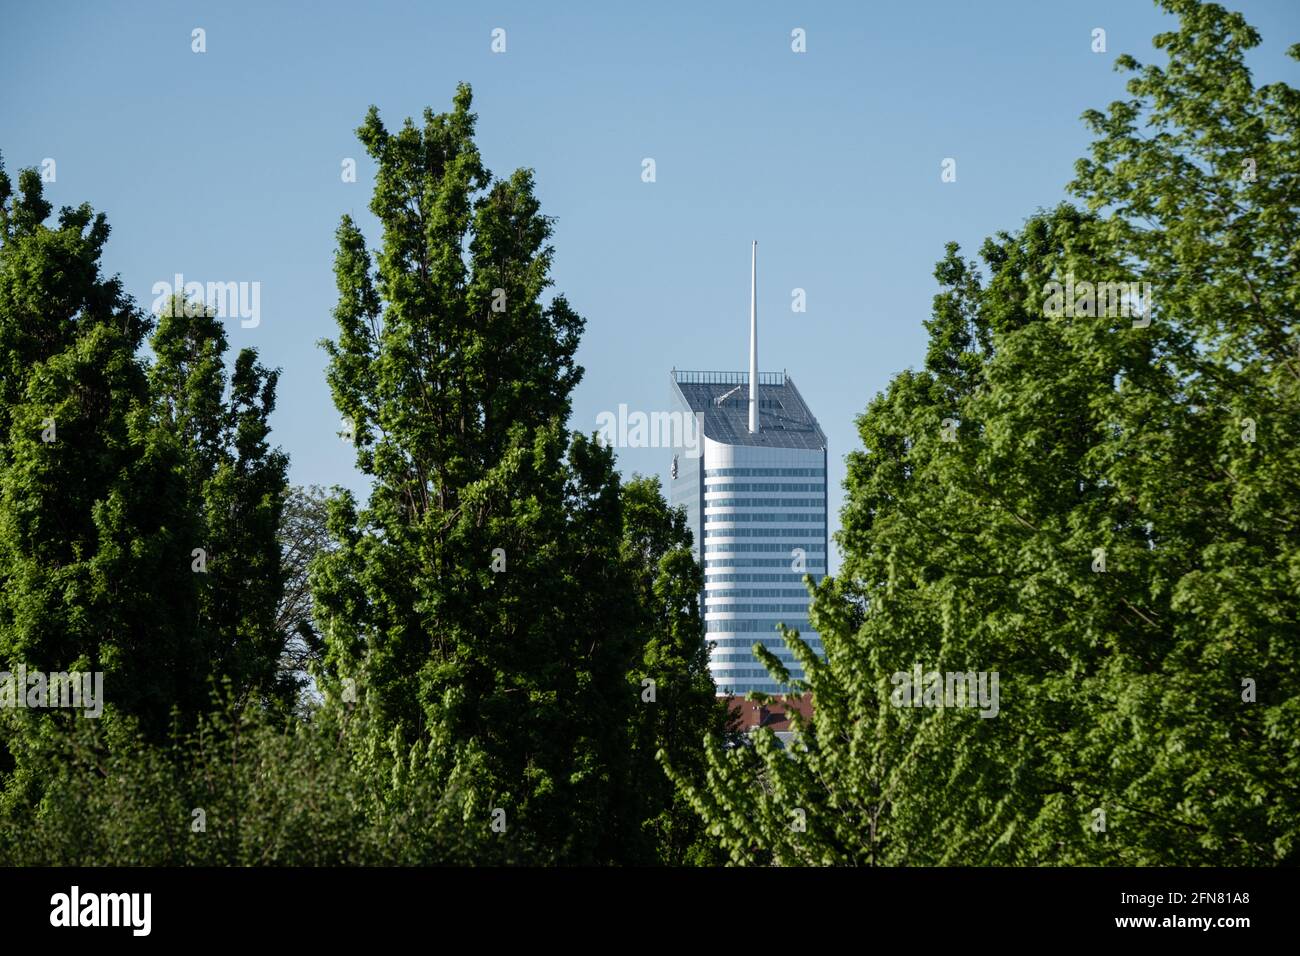 Lyon (Francia), 03 de mayo de 2021. La torre incity entre los árboles del Parc de la tête d'Or. Foto de stock